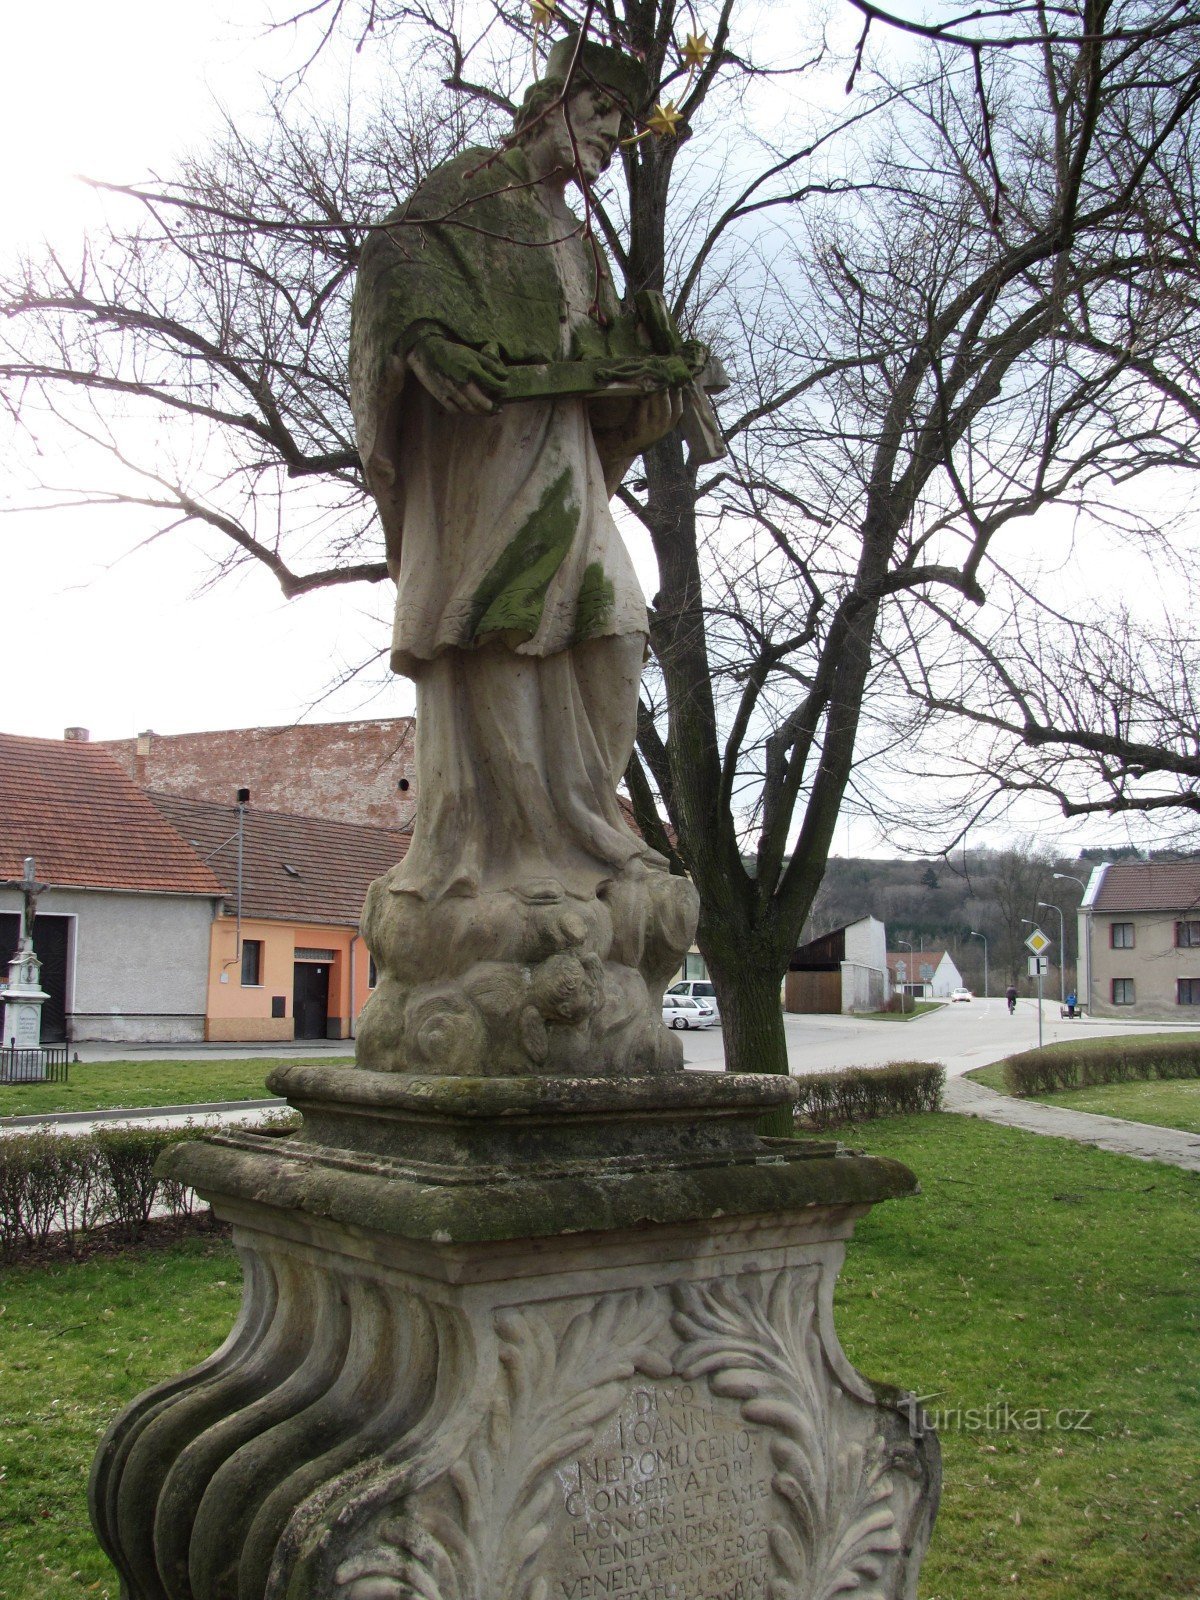 Svitavka - Szent szobor. Jan Nepomucký